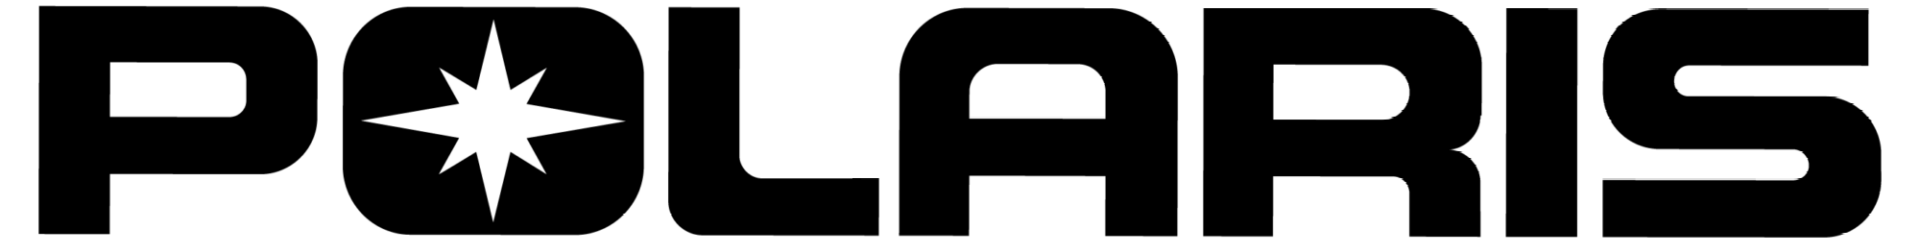 logo-polaris